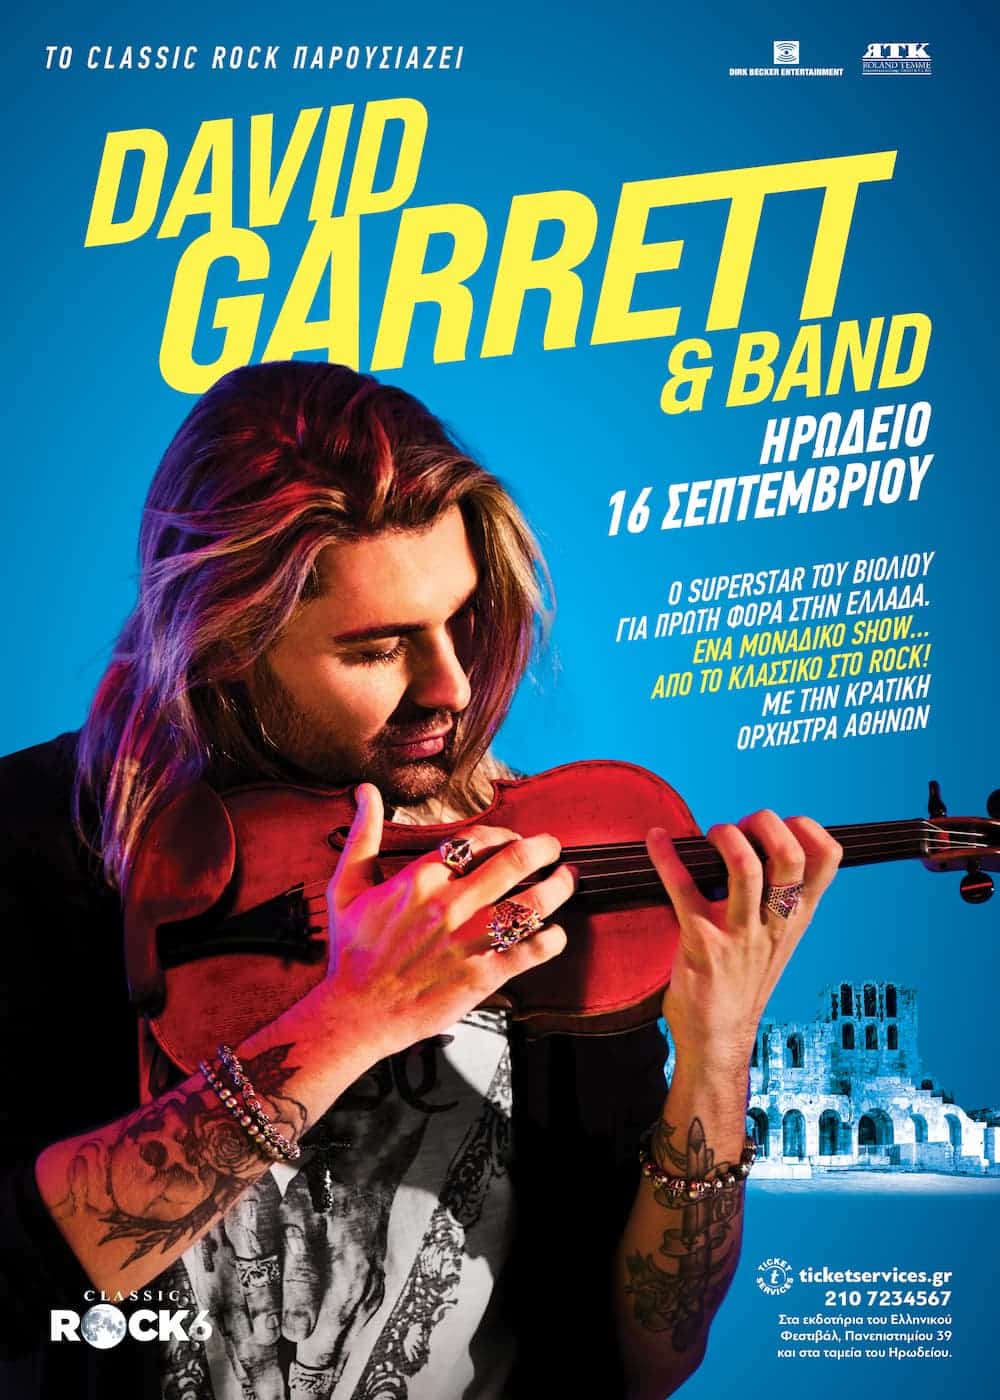 Ο Superstar βιολιστής David Garrett & band στο Ηρώδειο στις 16 Σεπτεμβρίου